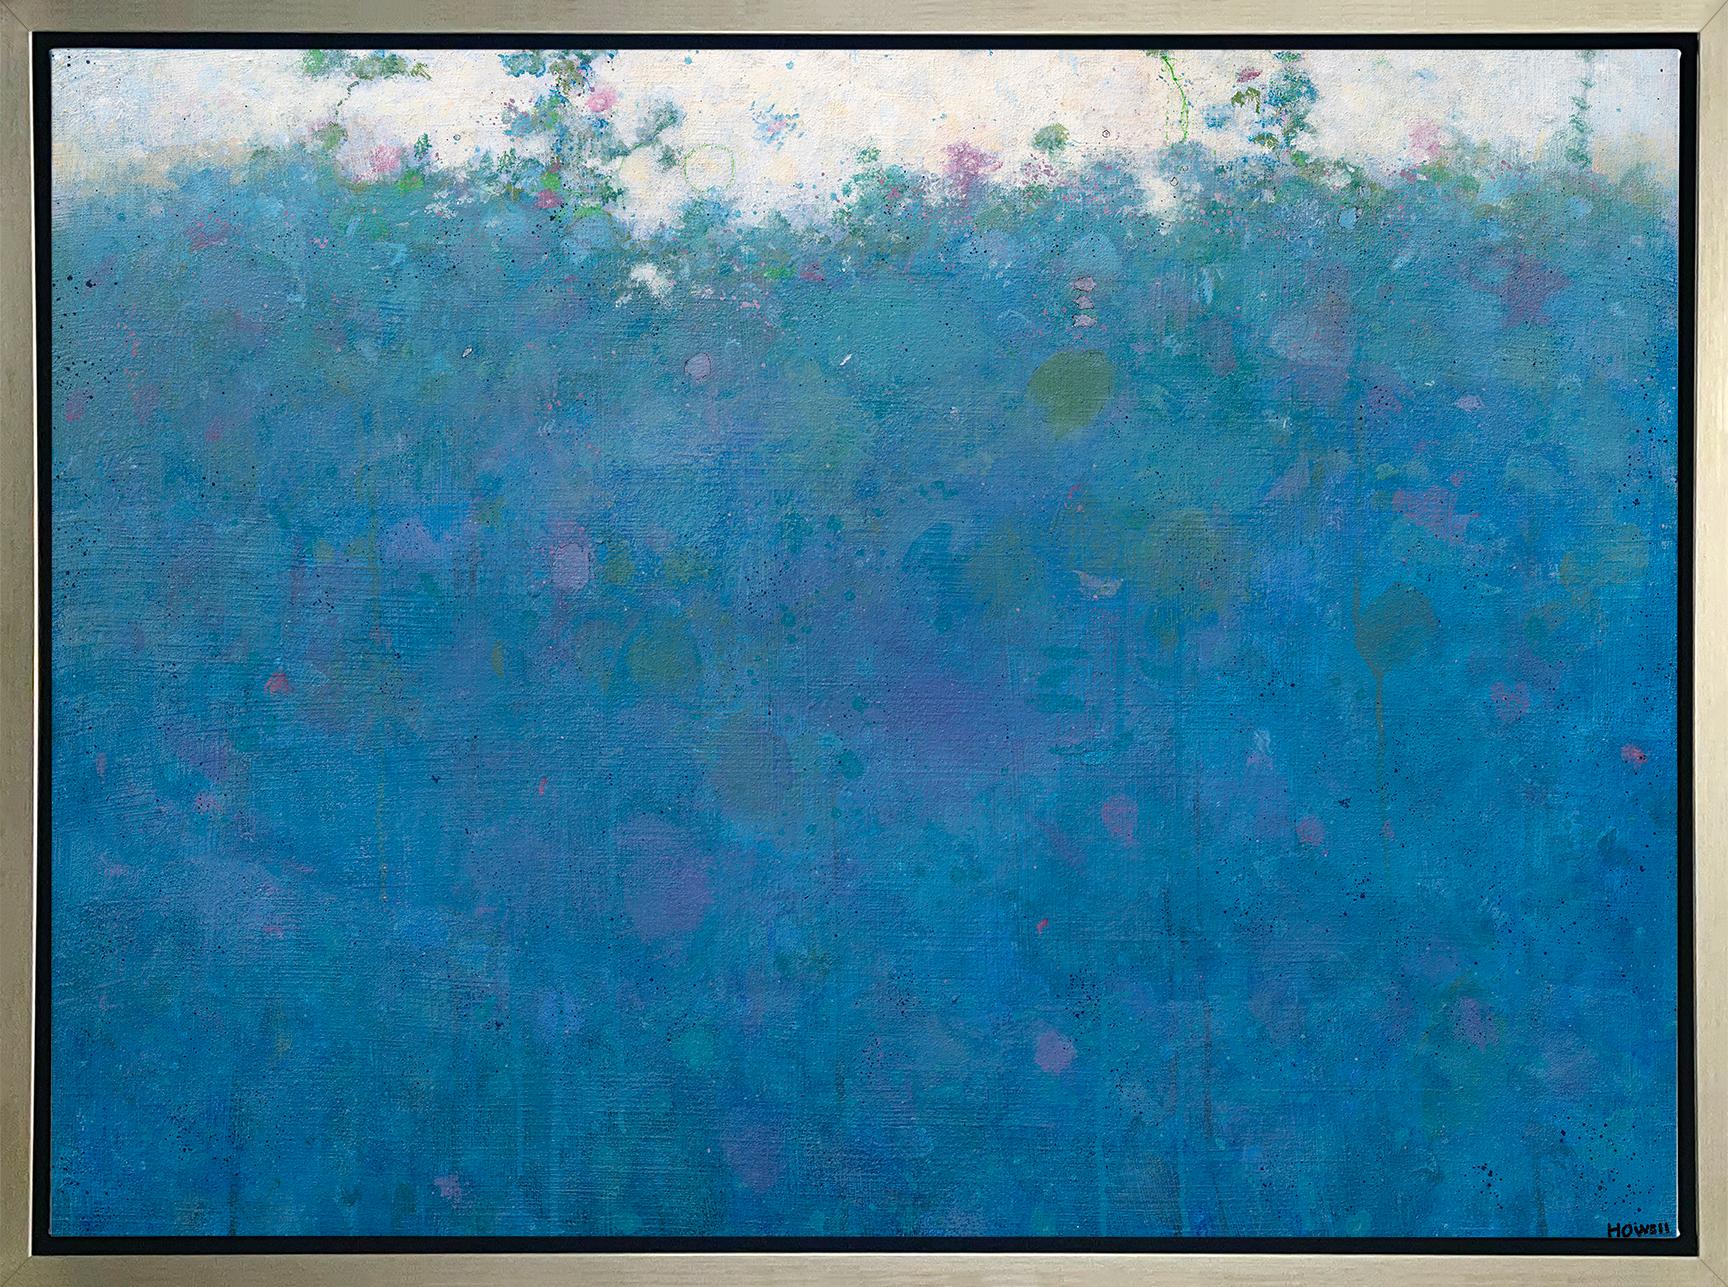 Abstract Print Elwood Howell - « Blue Magic », imprimé giclée encadré en édition limitée, 45,72 x 60,96 cm